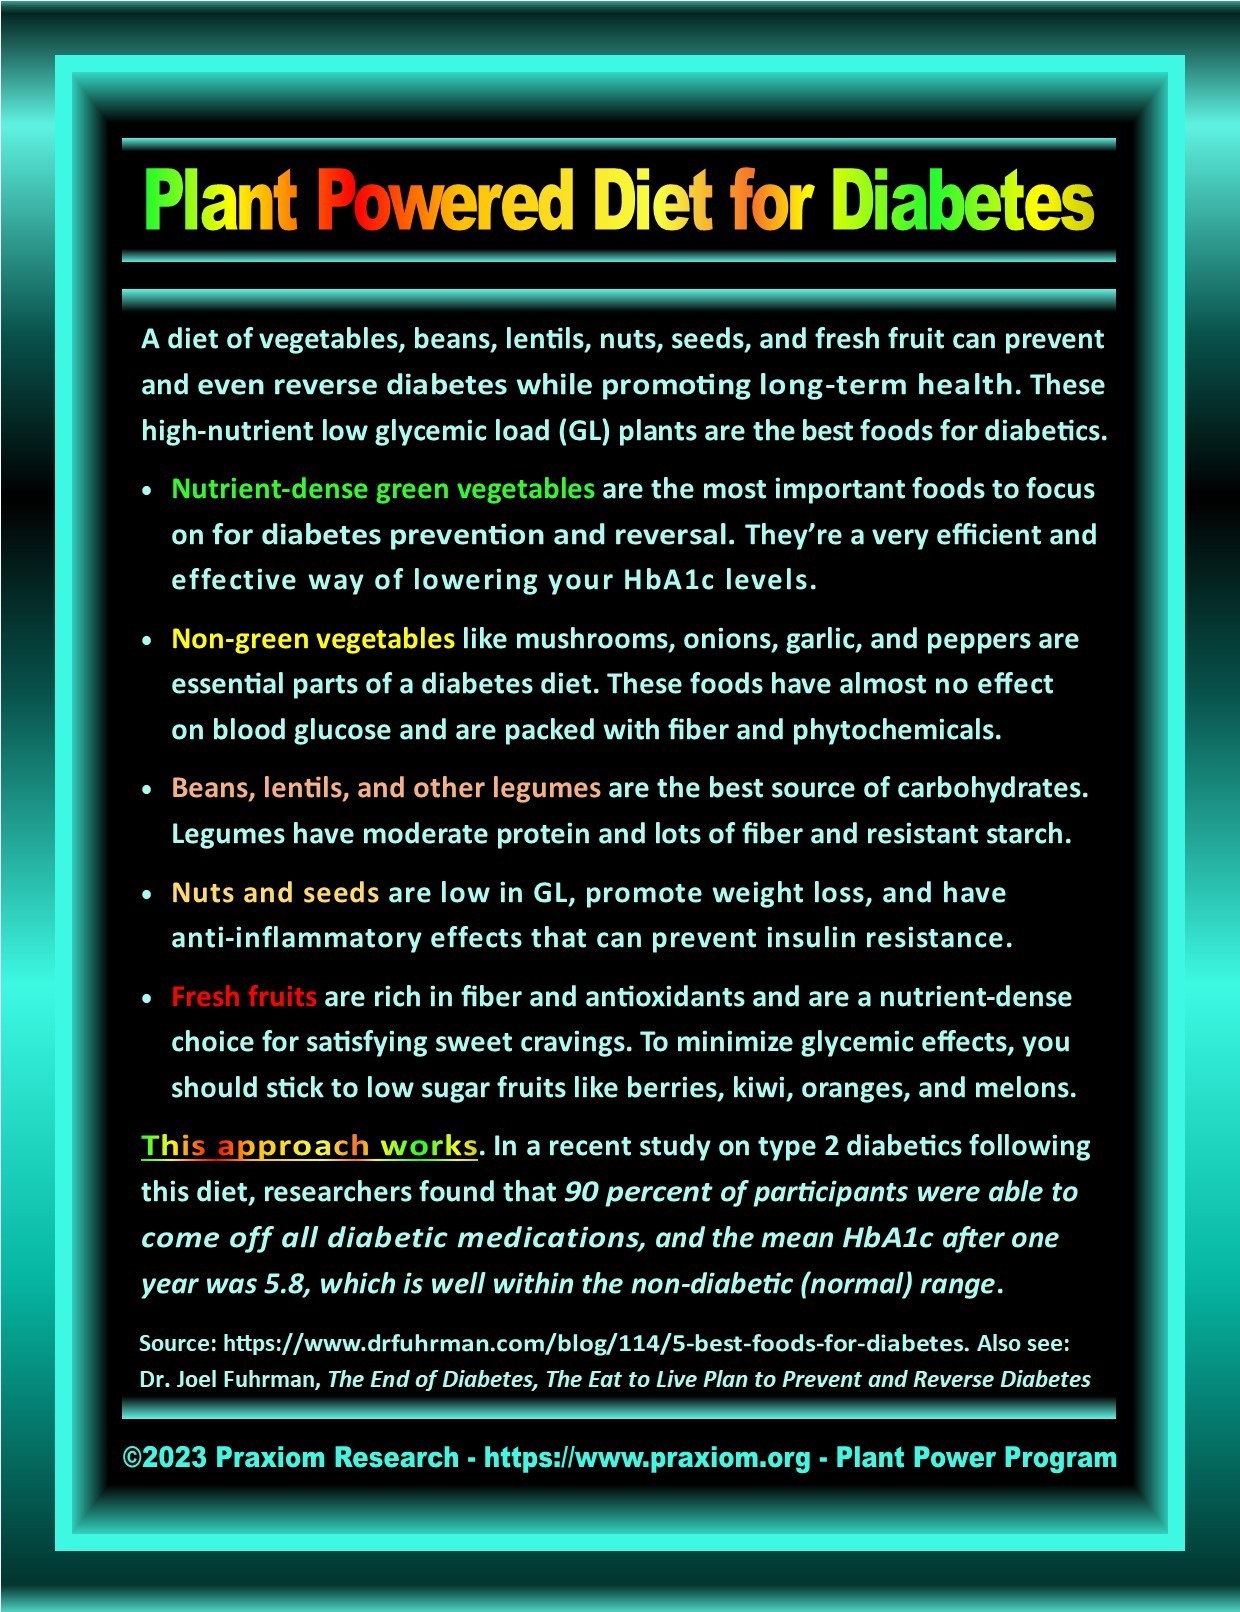 Plant Based Diet for Diabetes - Dr. Joel Fuhrman